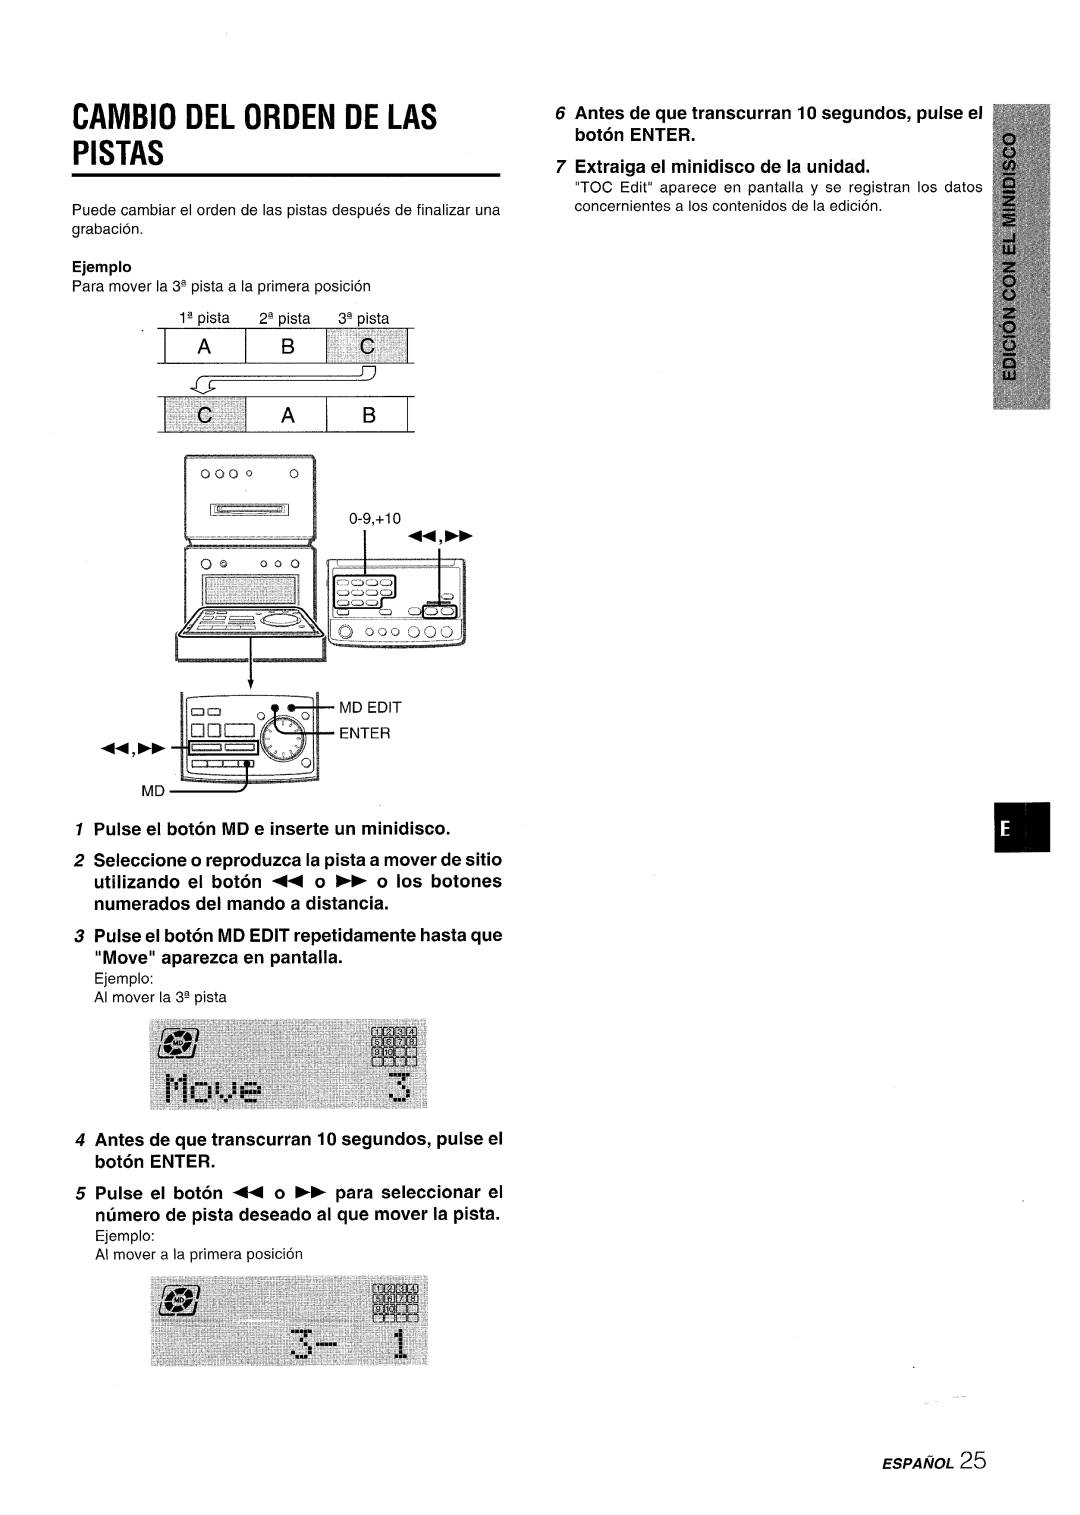 Aiwa XR-MD95 manual Cambio Del Orden De Las Pistas, Antes de que transcurran 10 segundos, pulse el boton ENTER 